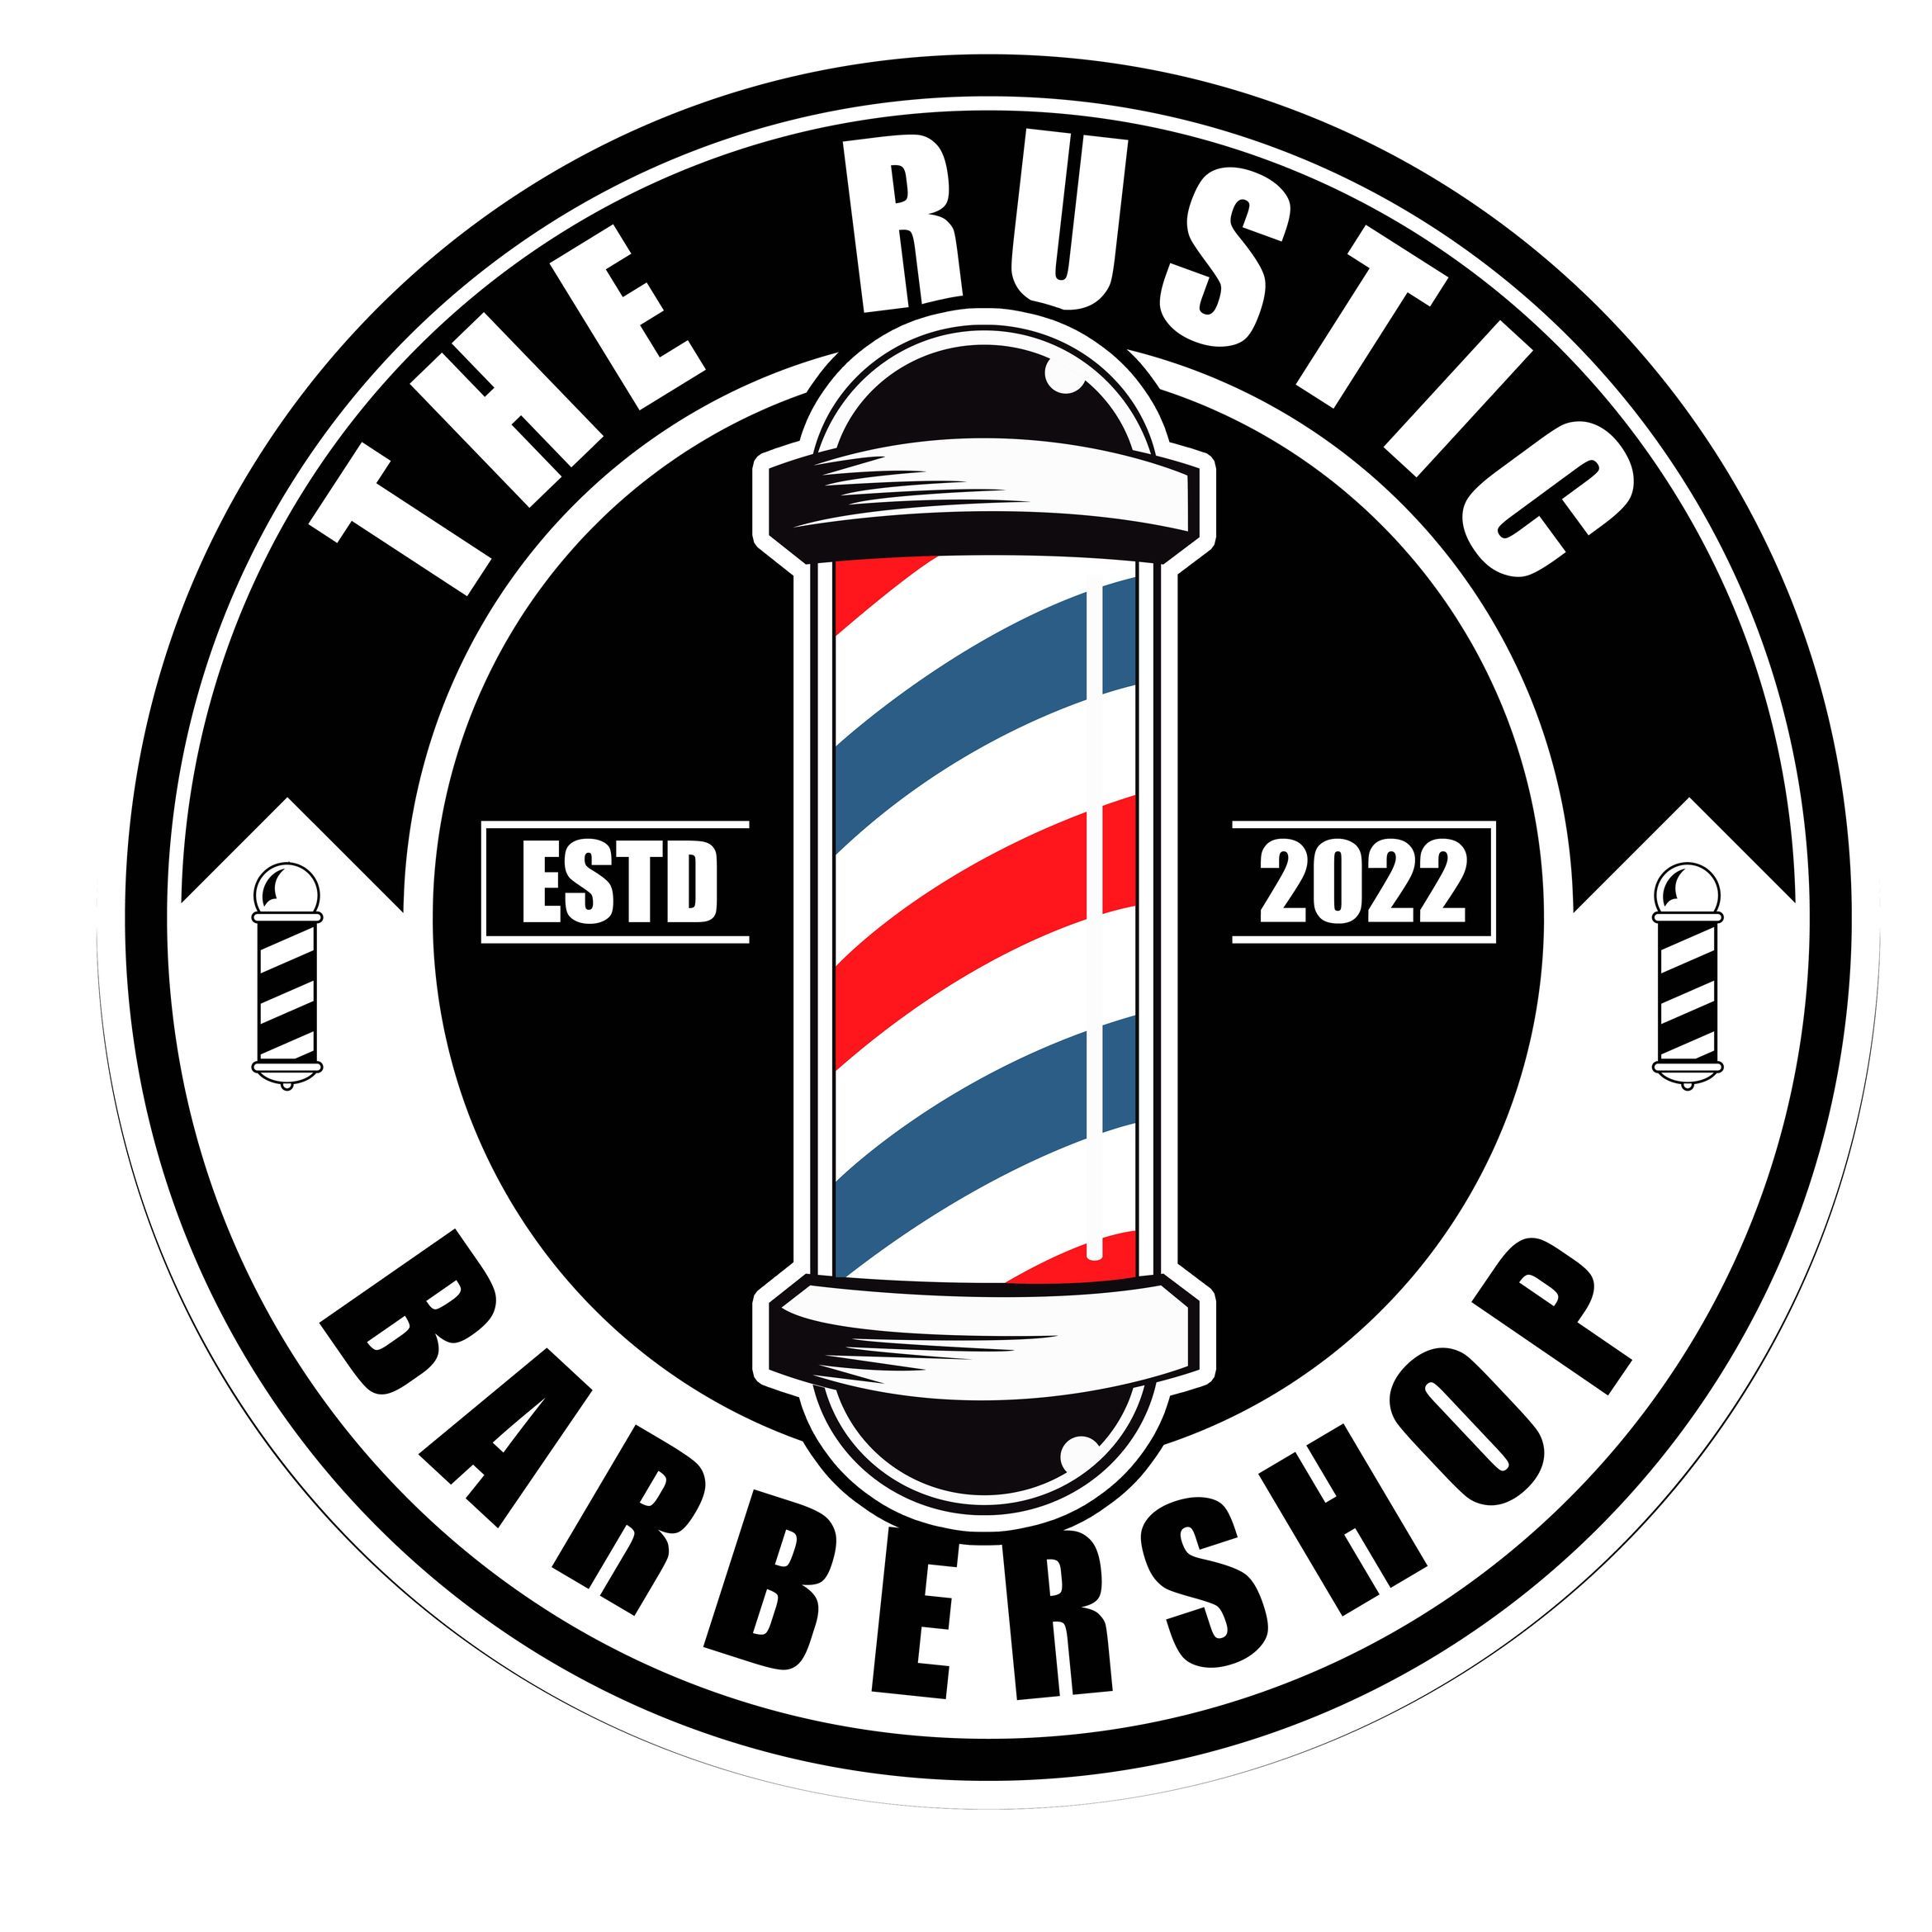 Alex Anzaldua The Rustic Barbershop, 4122 FM 762, #409, Rosenberg, 77471